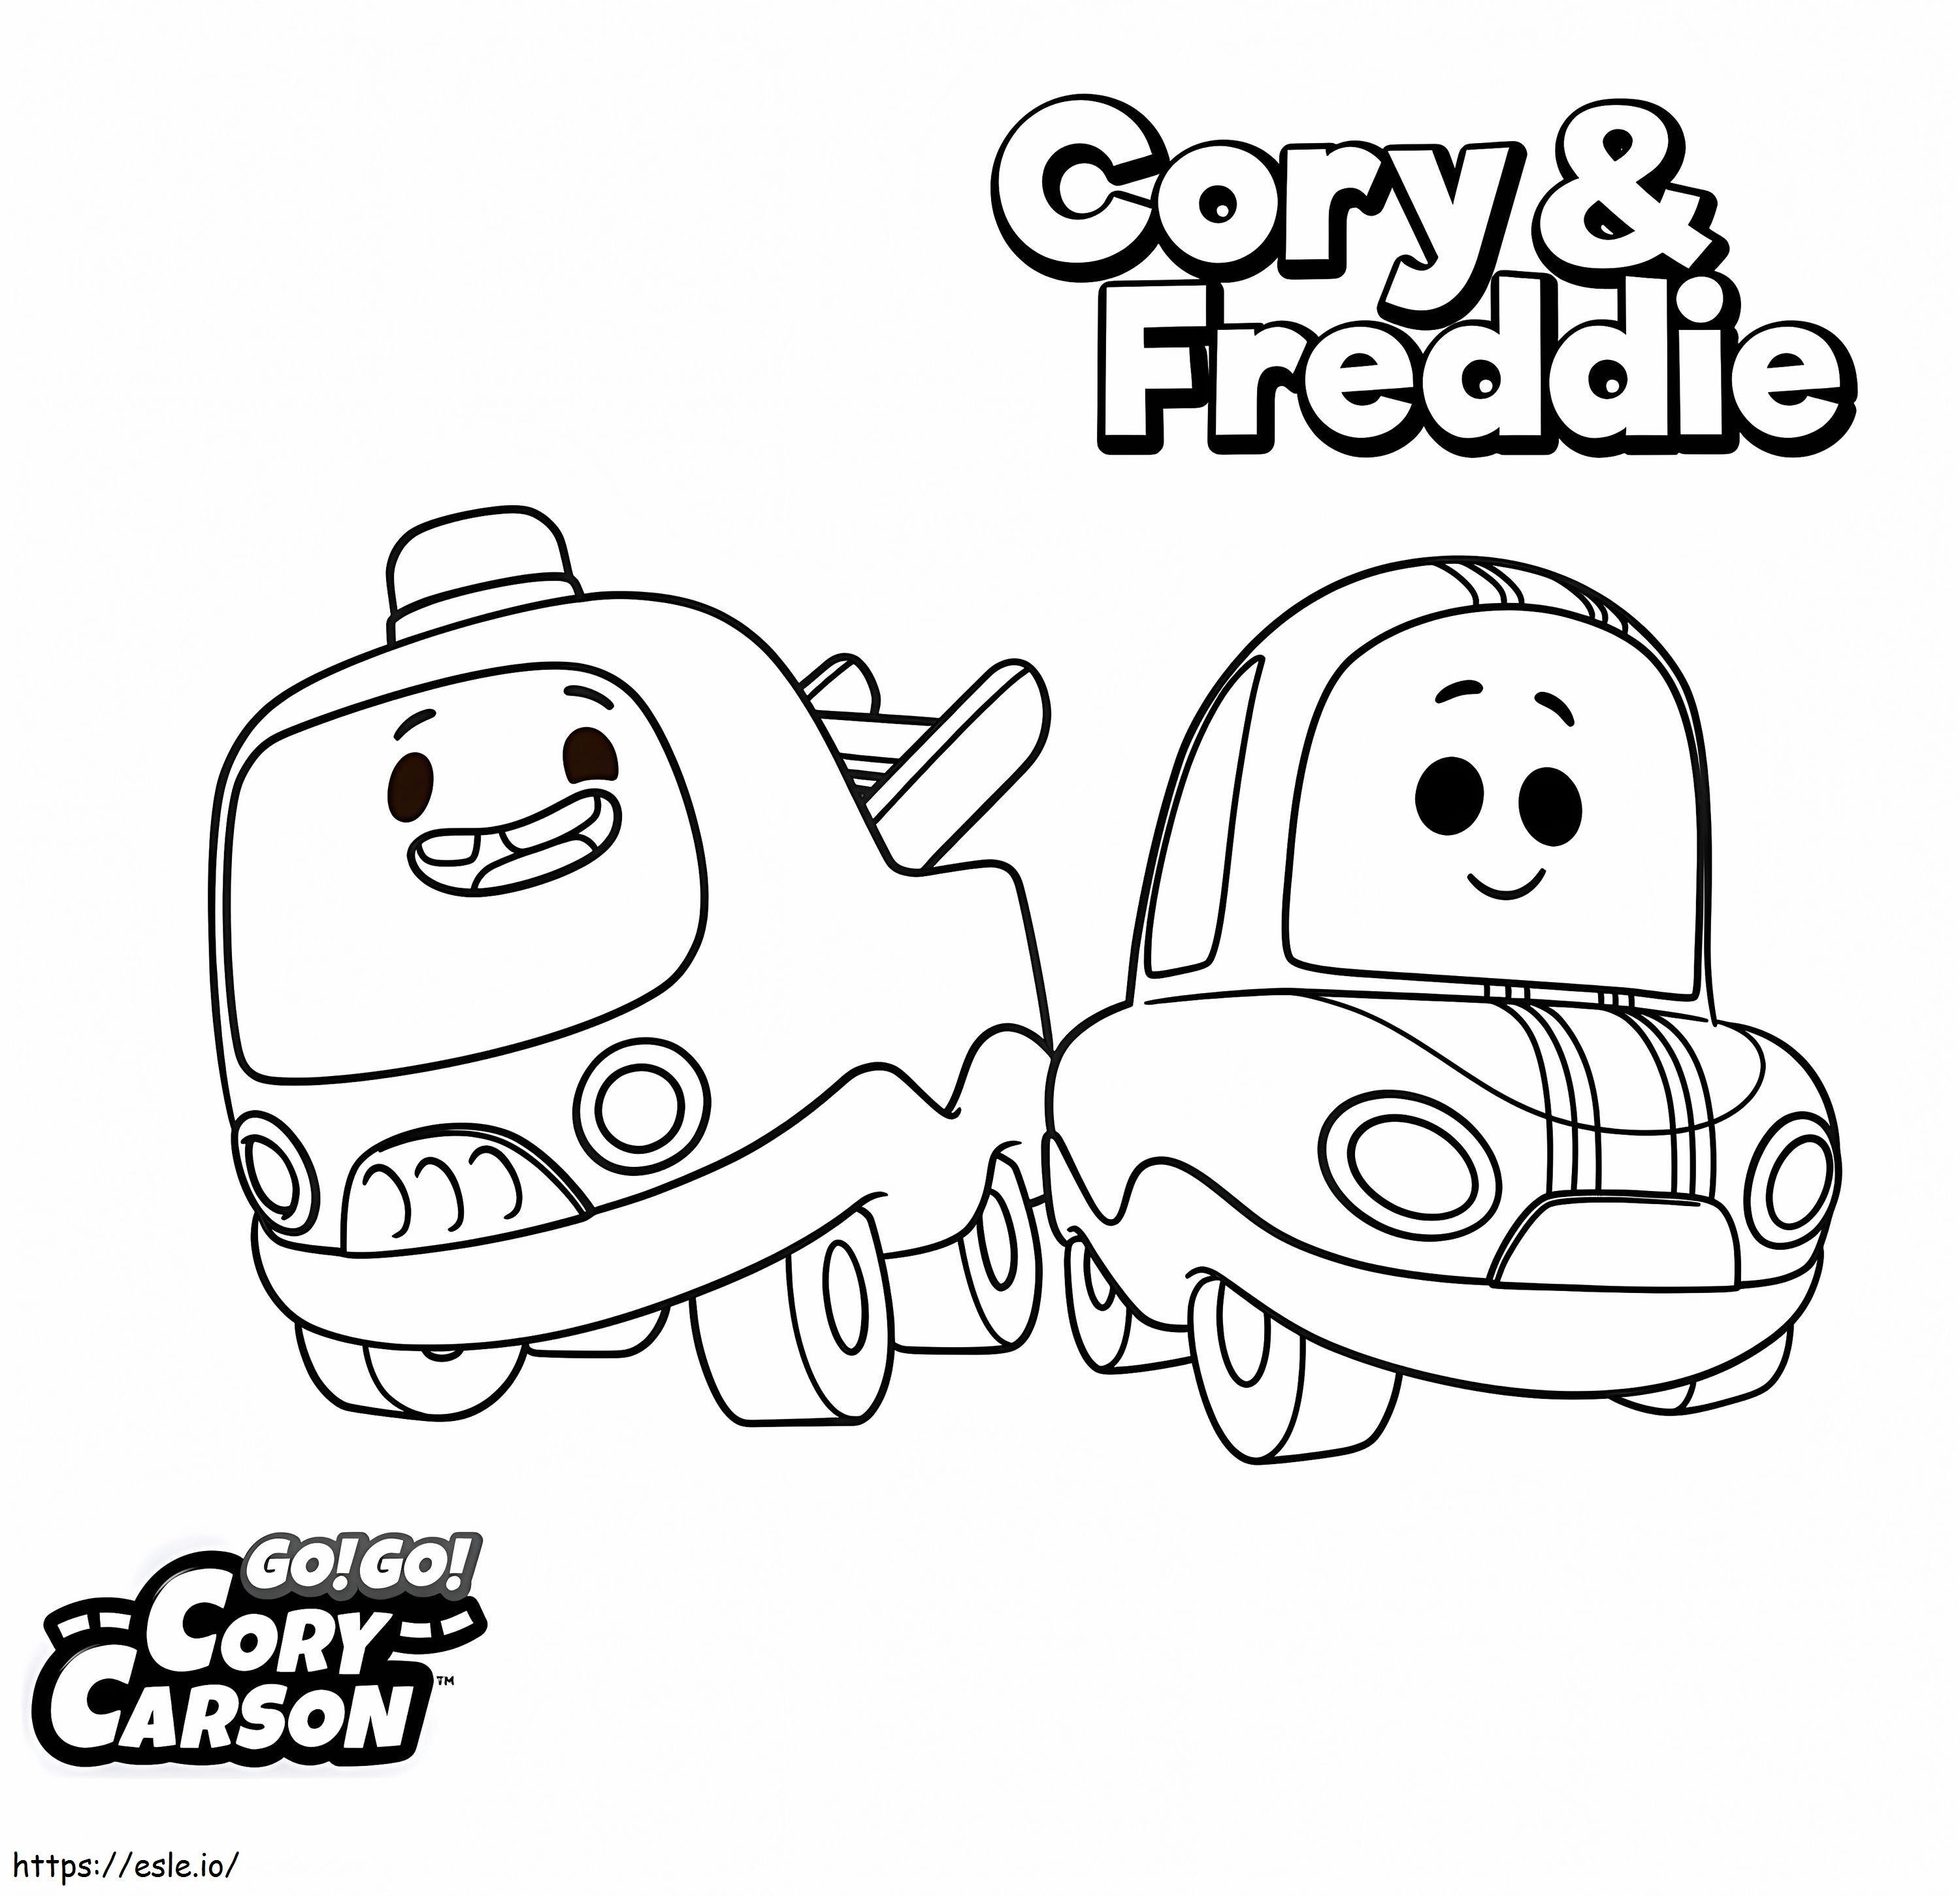 Cory i Freddie z Go Go Cory Carson kolorowanka